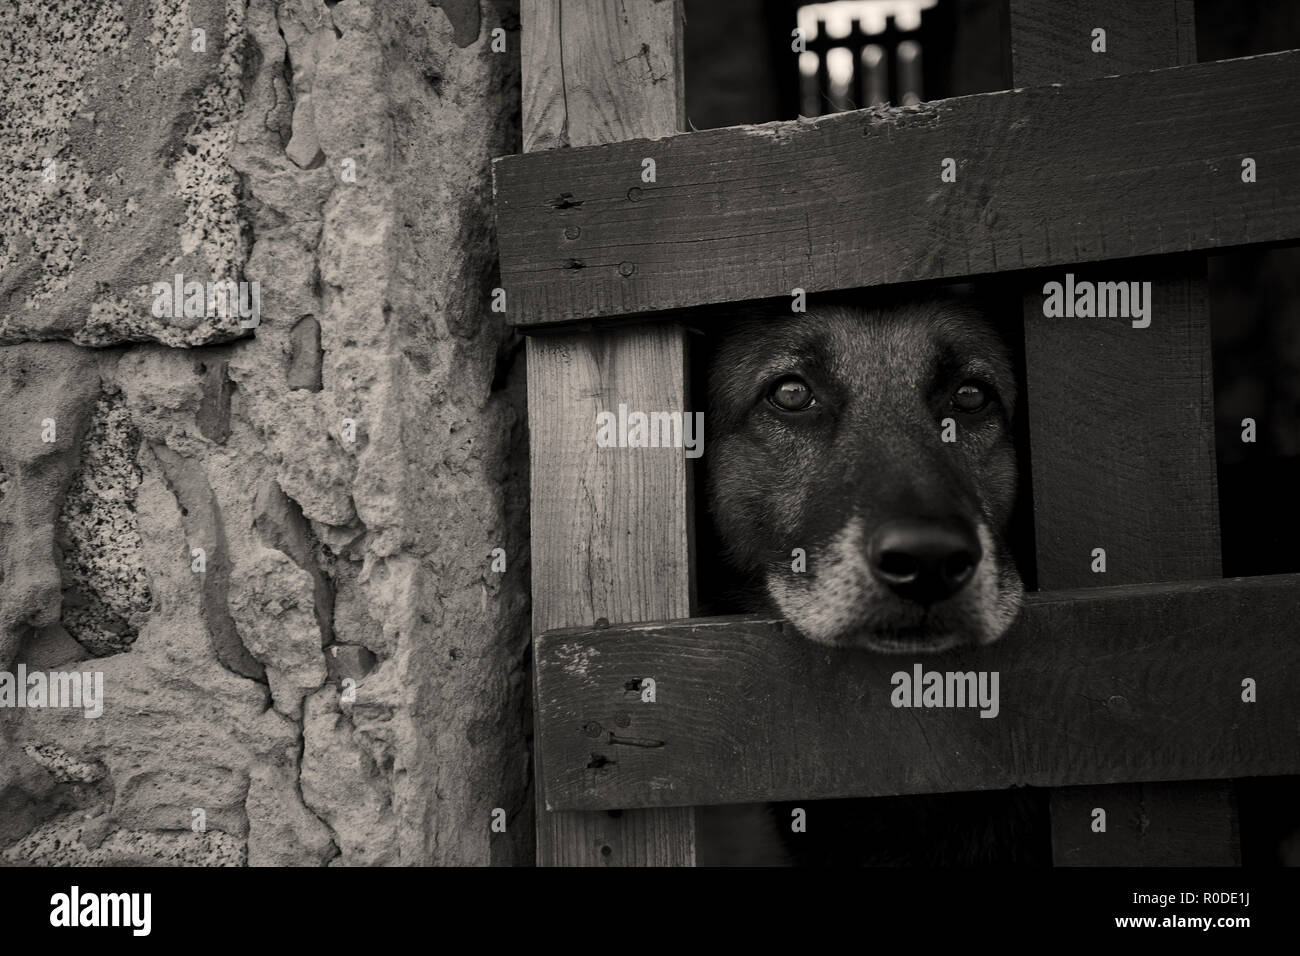 Junge Hund suchen durch das Gitter ein Käfig, in dem er eingesperrt ist:  das Leiden von jemandem, der die Freiheit entzogen ist und durch die Hand  derer, die Stockfotografie - Alamy